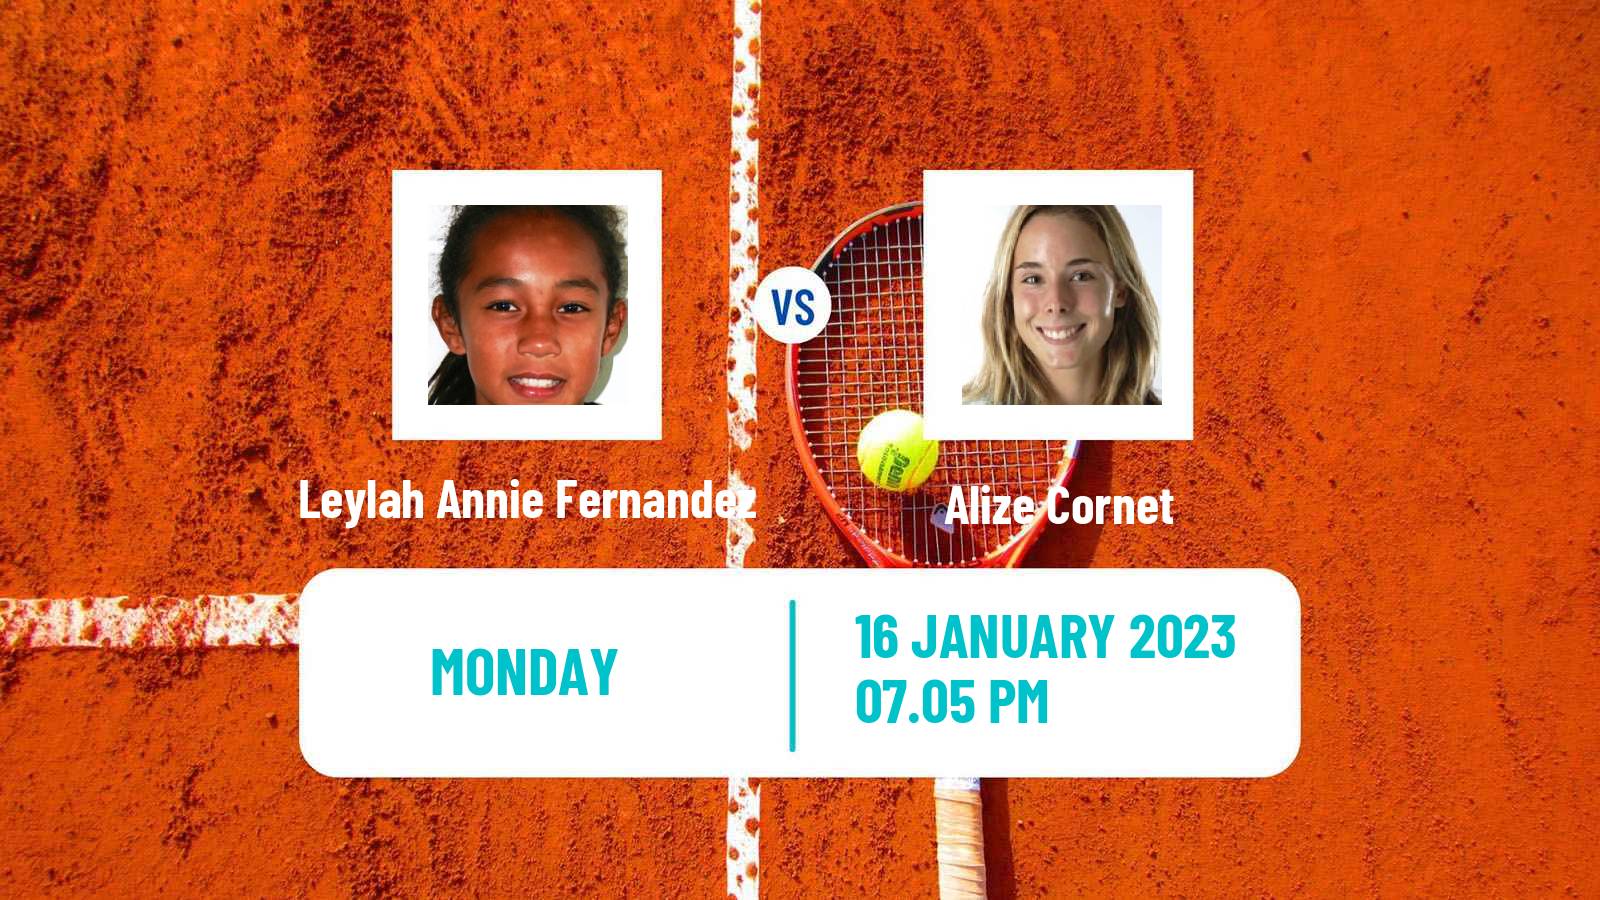 Tennis WTA Australian Open Leylah Annie Fernandez - Alize Cornet